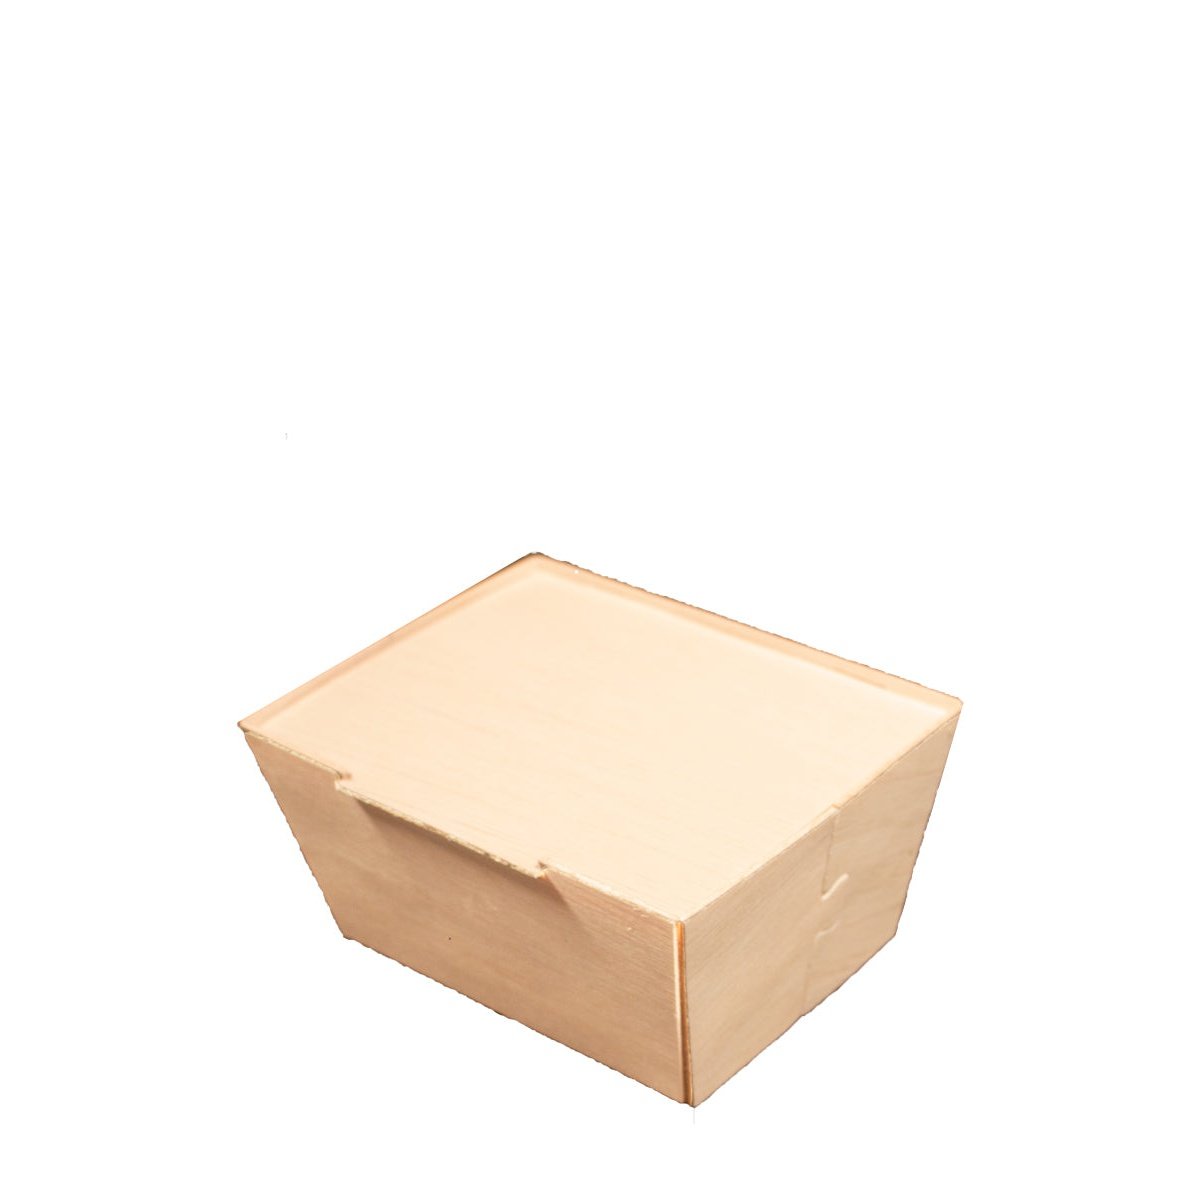 Promo selezione 4x Bag in Box da 2,25L - Torri Cantine Store IT